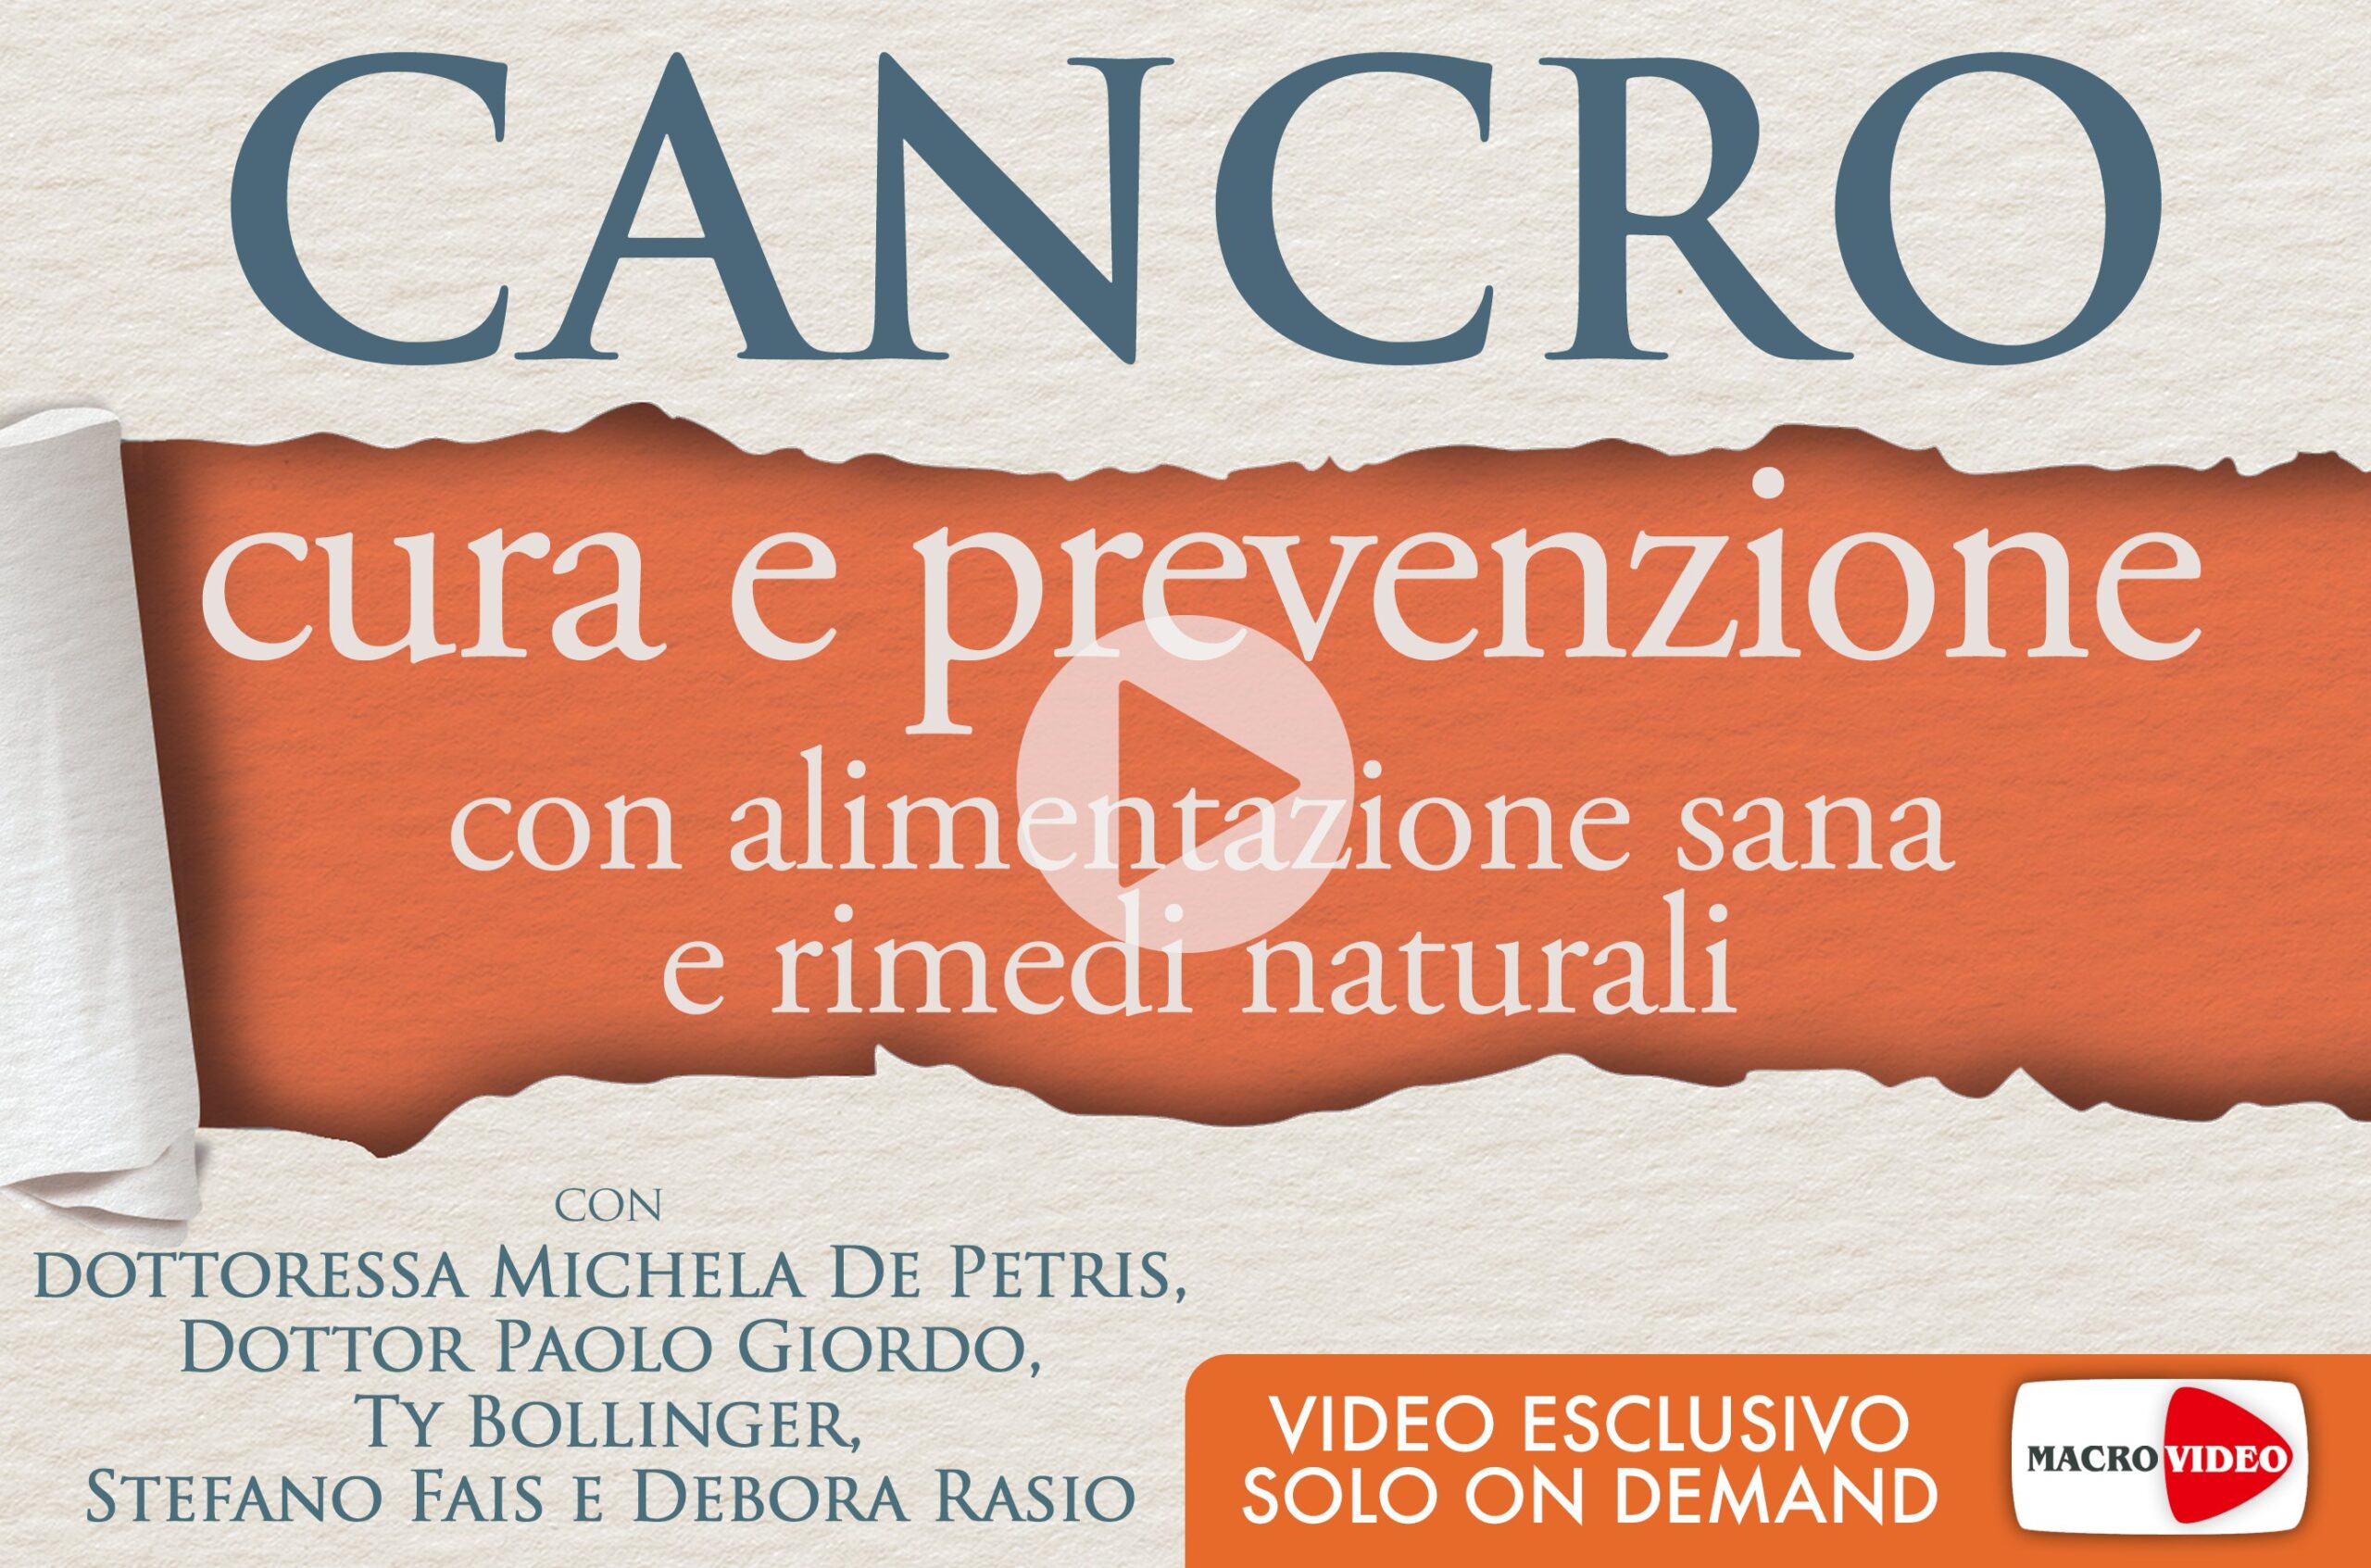 cancro-cura-e-prevenzione-download-copertina-300dpi